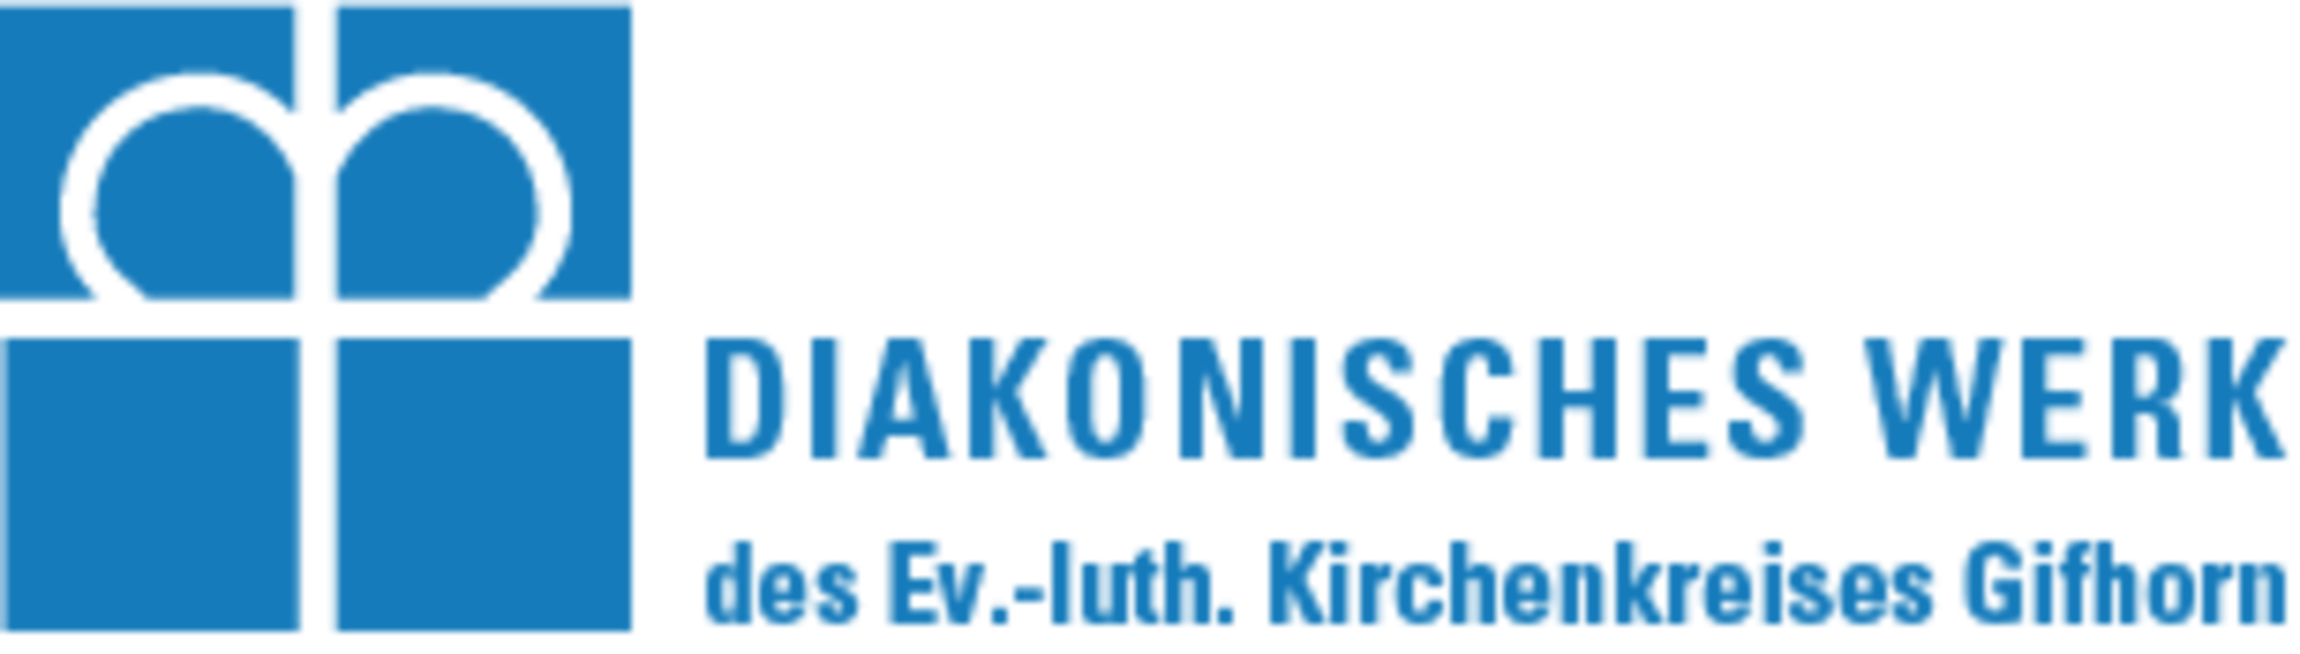 Diakonie_Logo2